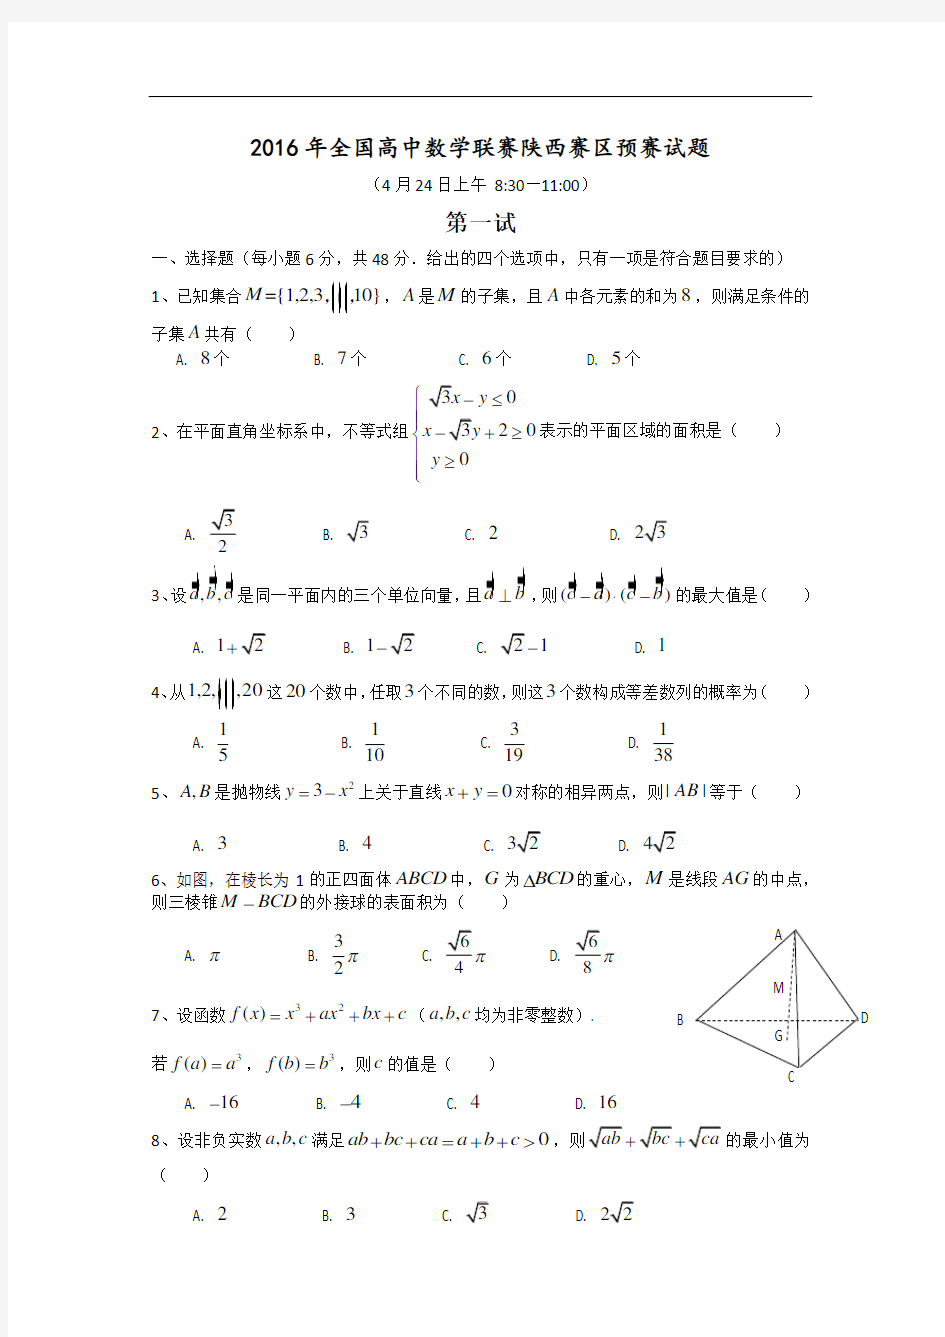 12 2016陕西省数学竞赛预赛试题及其答案